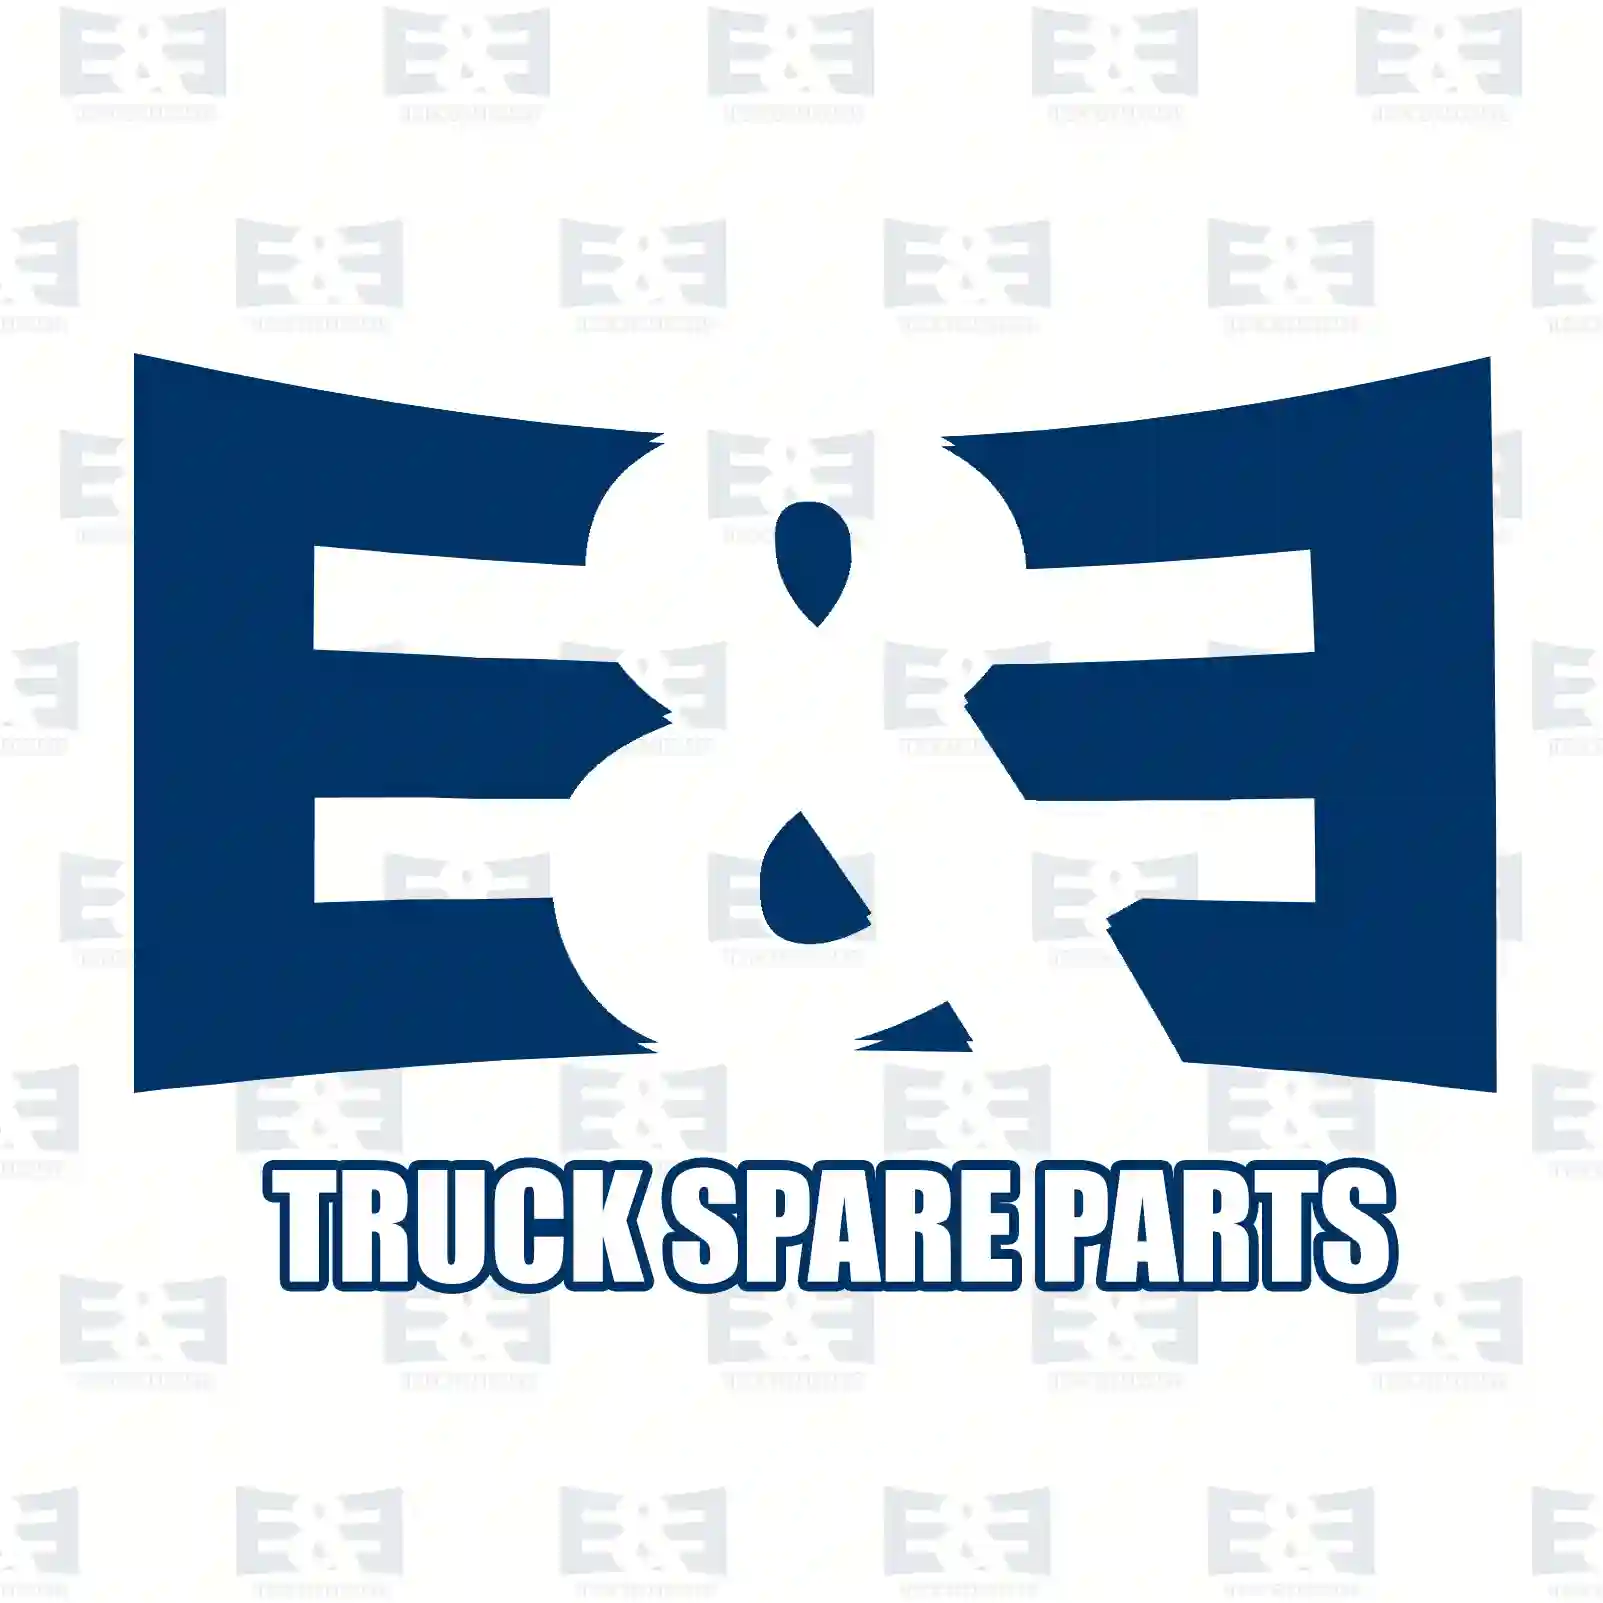 Gasket kit, air pressure pipe, 2E2295431, 06569390054S, 06569390073S, 81981810177, 81981810177S, 81981810179, 81981810179S, 0009940147S, 0009941448S, 6739970145, ZG50479-0008 ||  2E2295431 E&E Truck Spare Parts | Truck Spare Parts, Auotomotive Spare Parts Gasket kit, air pressure pipe, 2E2295431, 06569390054S, 06569390073S, 81981810177, 81981810177S, 81981810179, 81981810179S, 0009940147S, 0009941448S, 6739970145, ZG50479-0008 ||  2E2295431 E&E Truck Spare Parts | Truck Spare Parts, Auotomotive Spare Parts